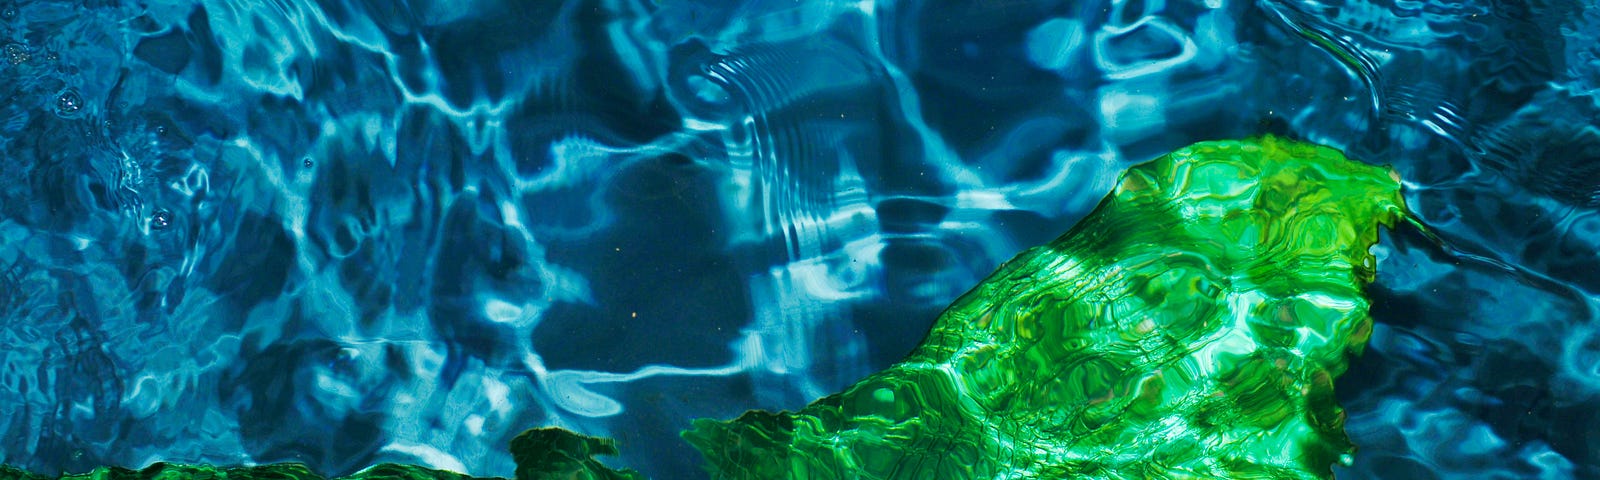 Green mermaid tail underwater